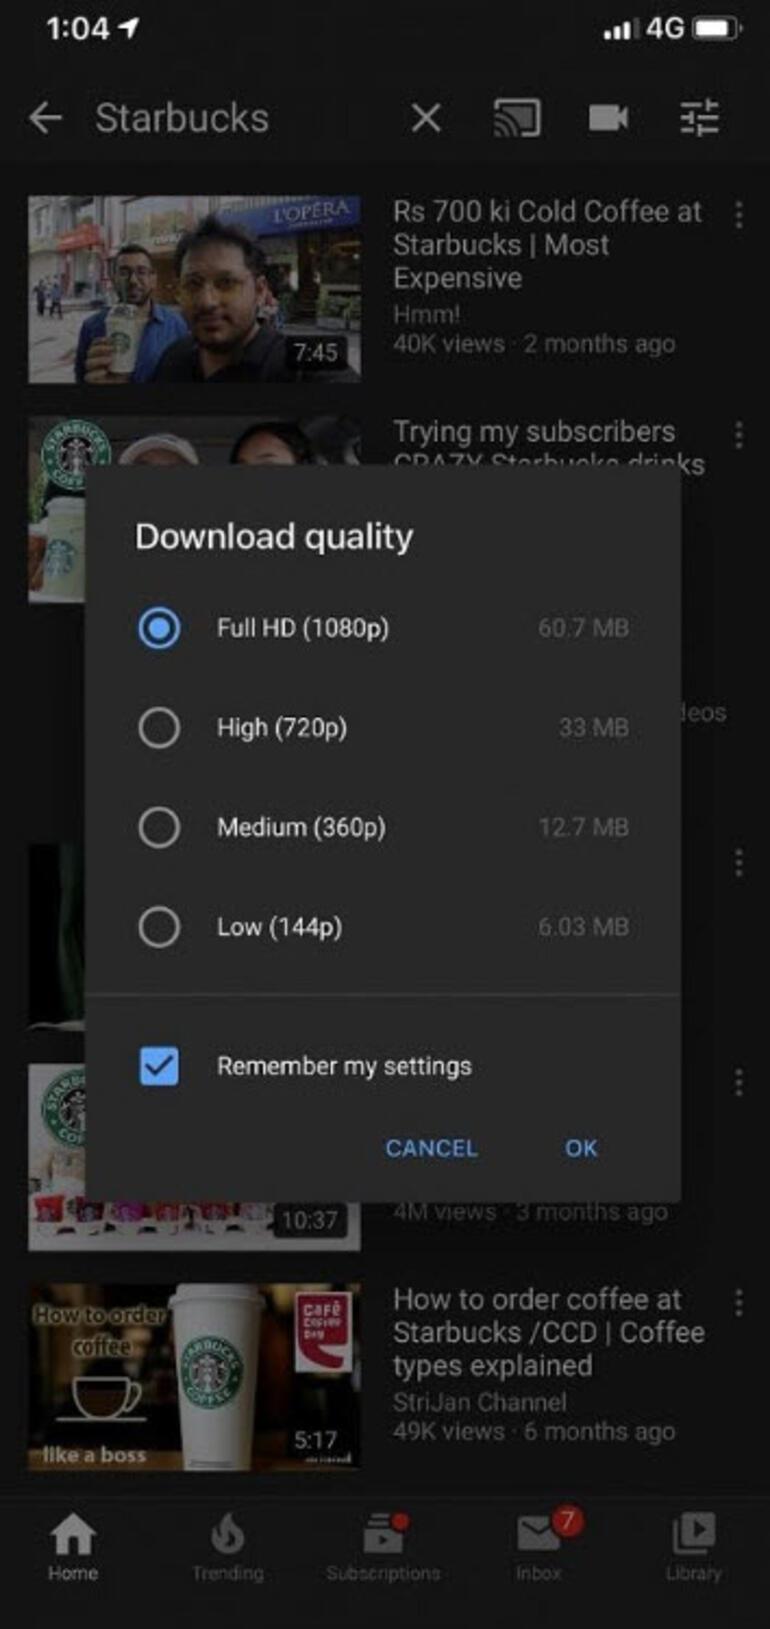 YouTube Premium üyeliği olanlara Full HD sürprizi